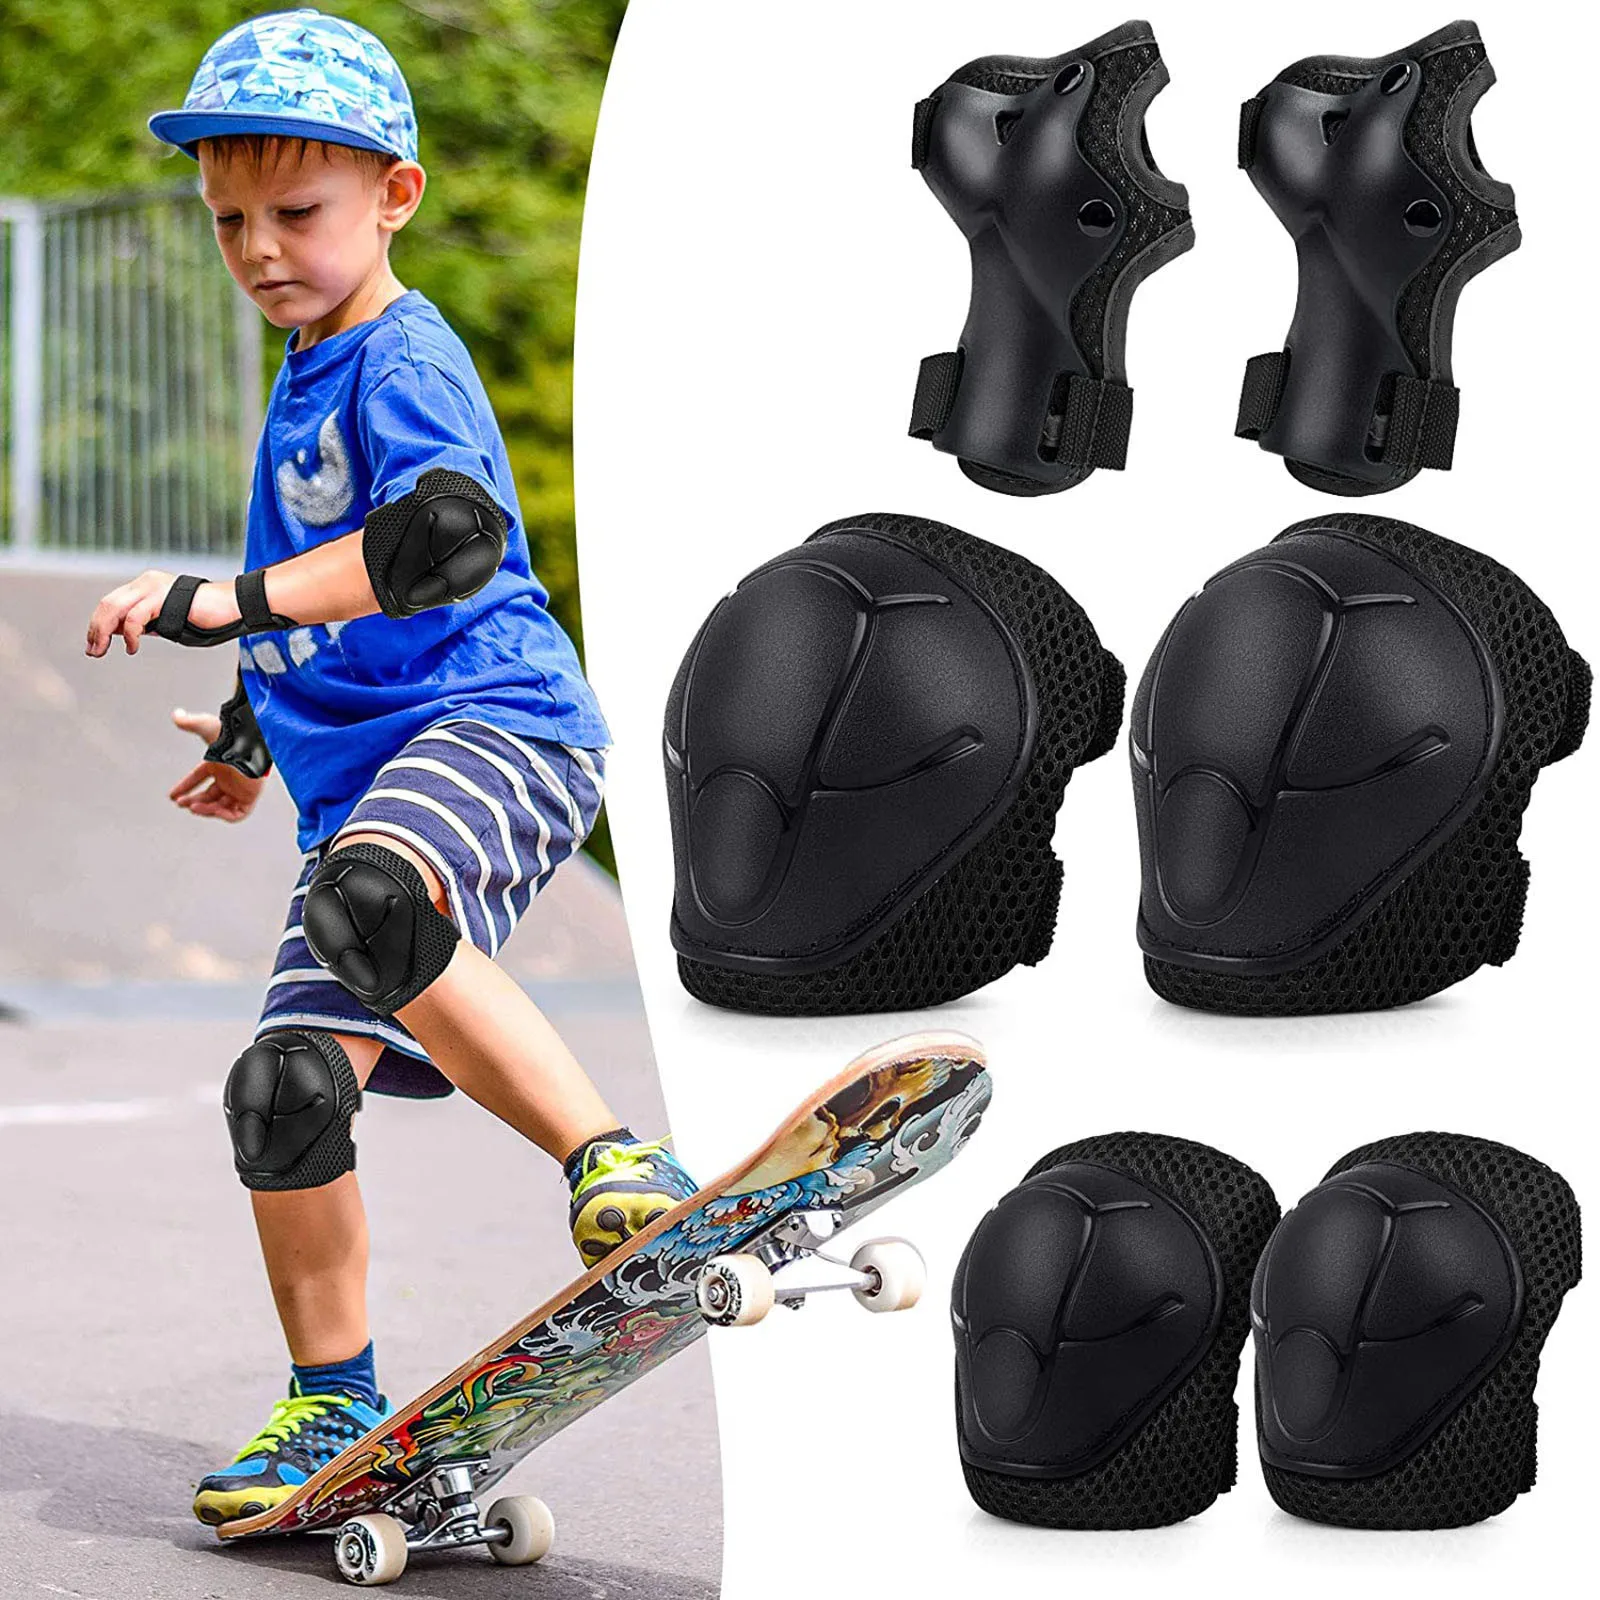 

Детский спортивный костюм 6 в 1, защитное снаряжение, наколенники, регулируемый костюм, Детские наколенники и налокотники, скейтборд, велосипед